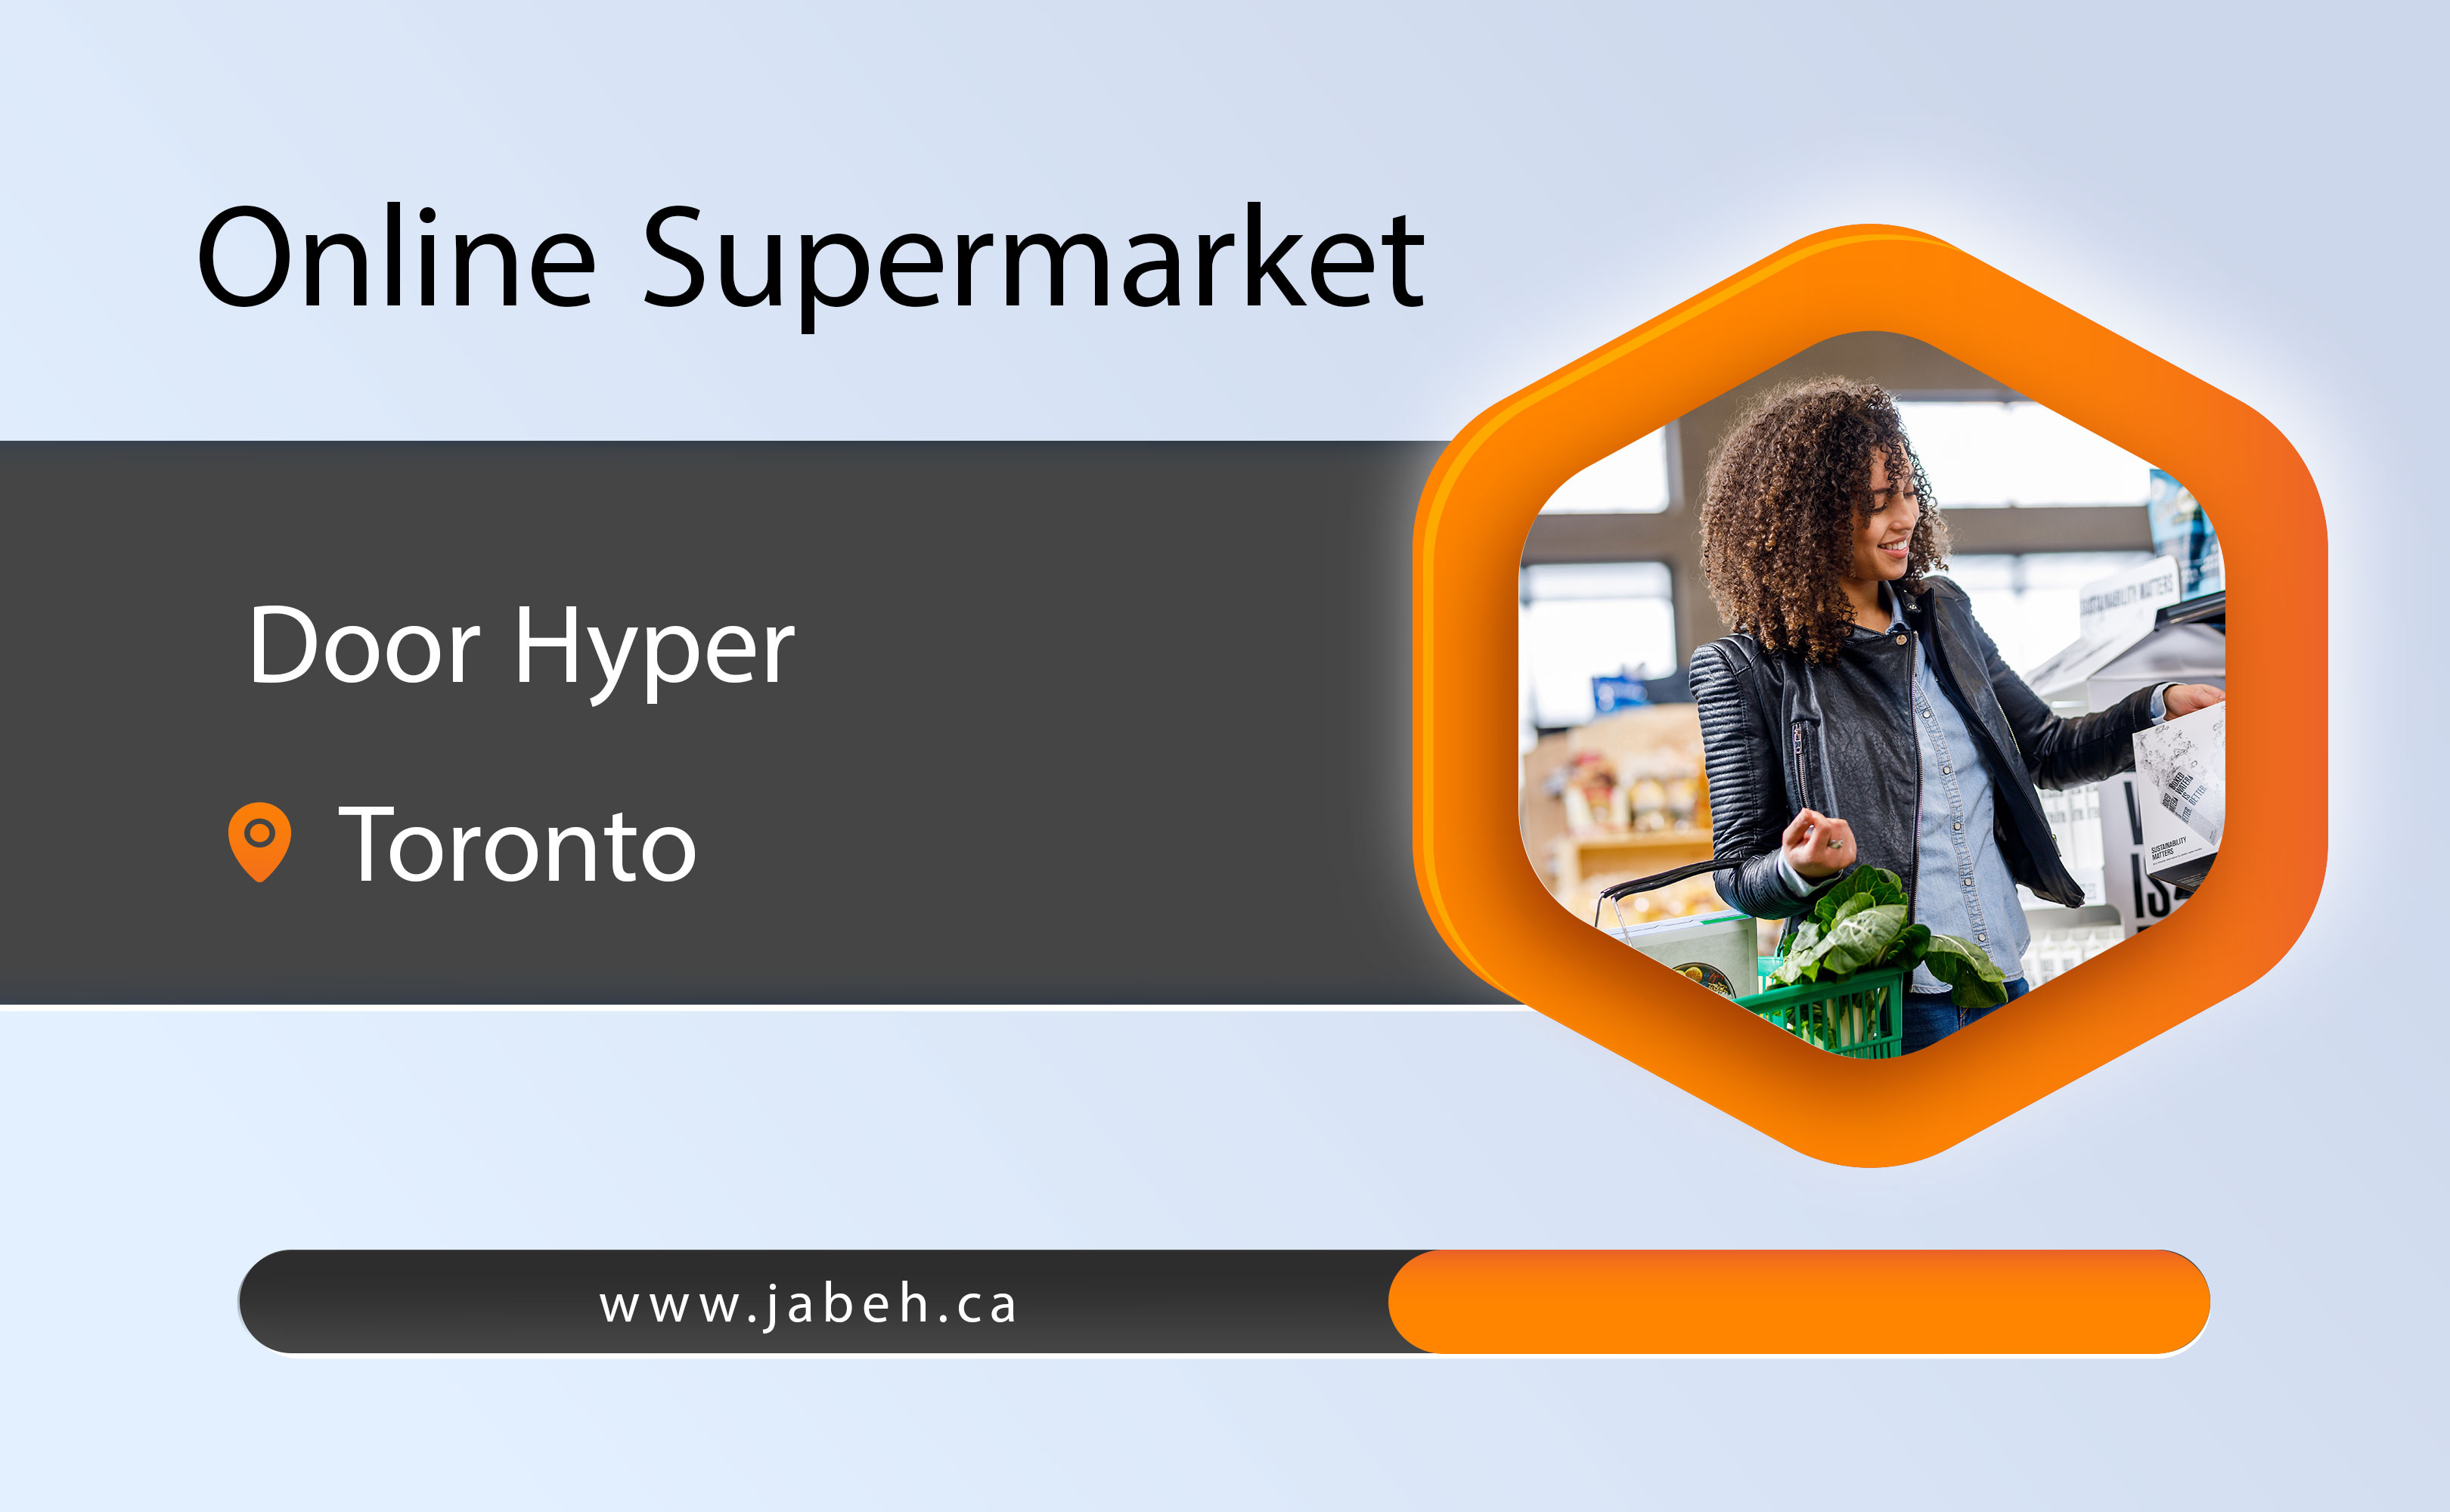 Door hyper online supermarket in Toronto